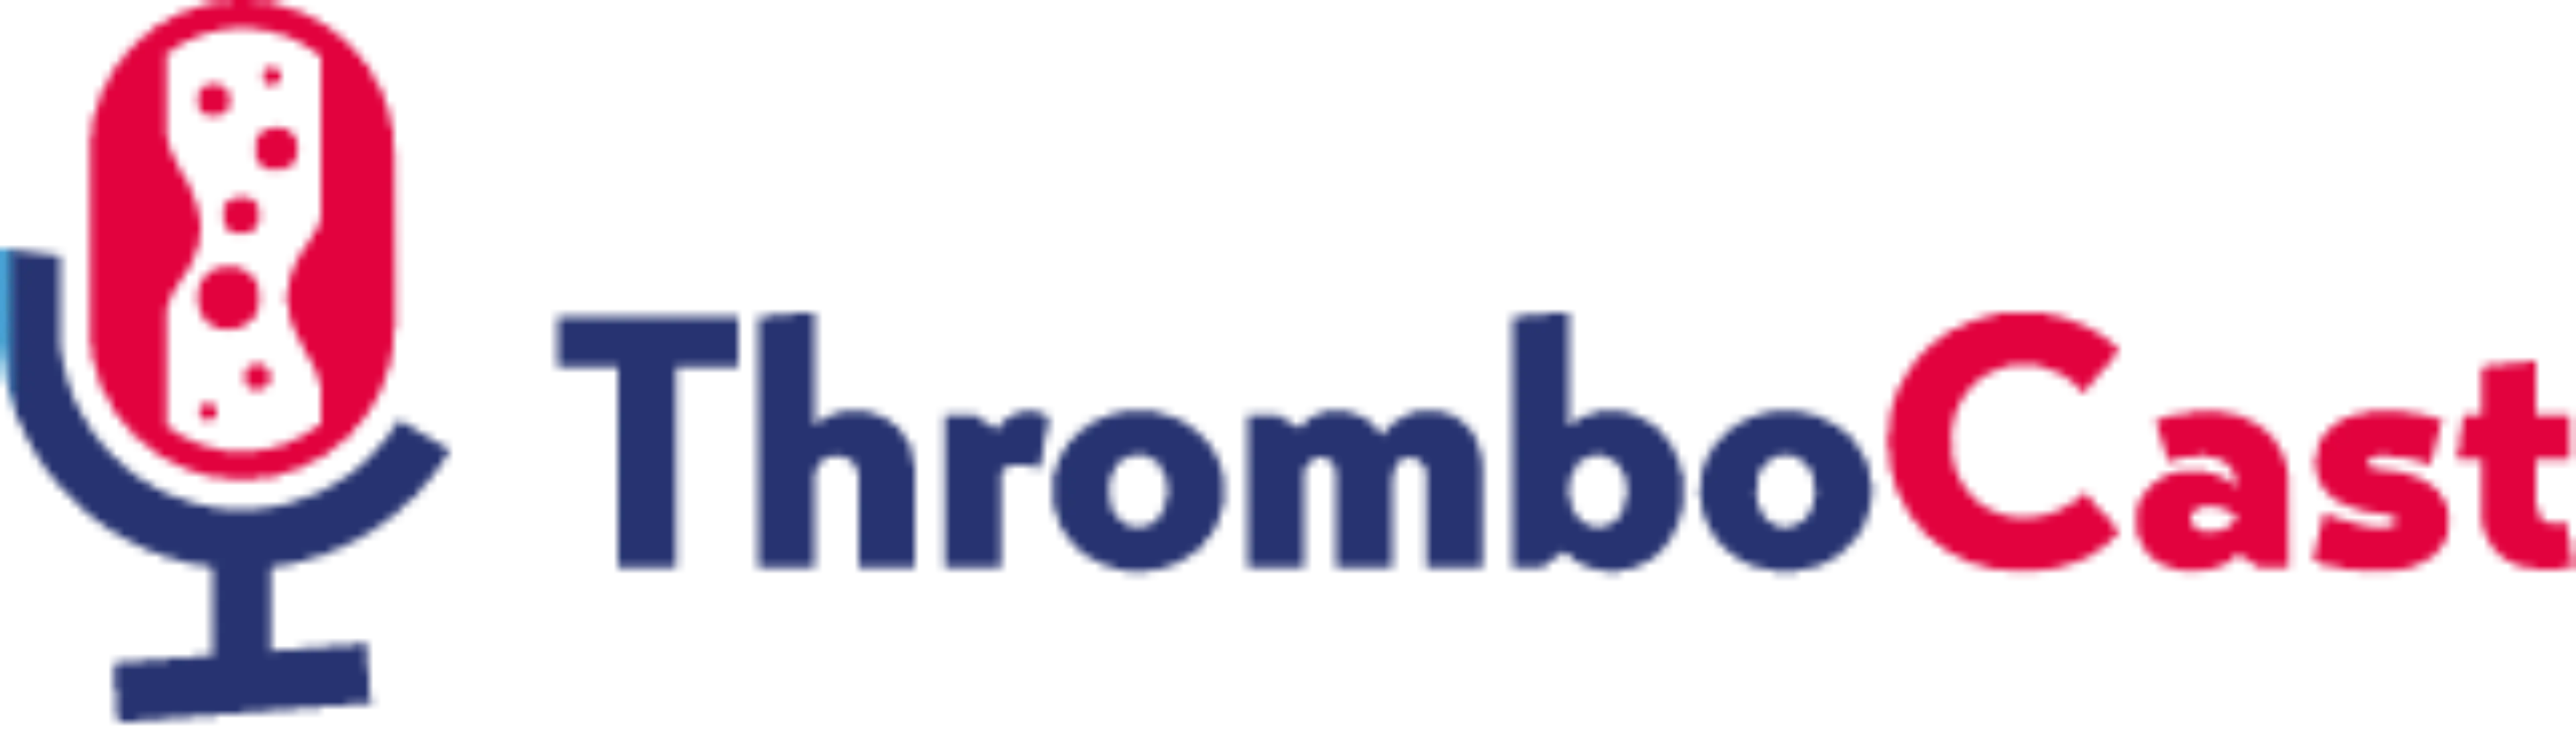 Logo Thrombocast